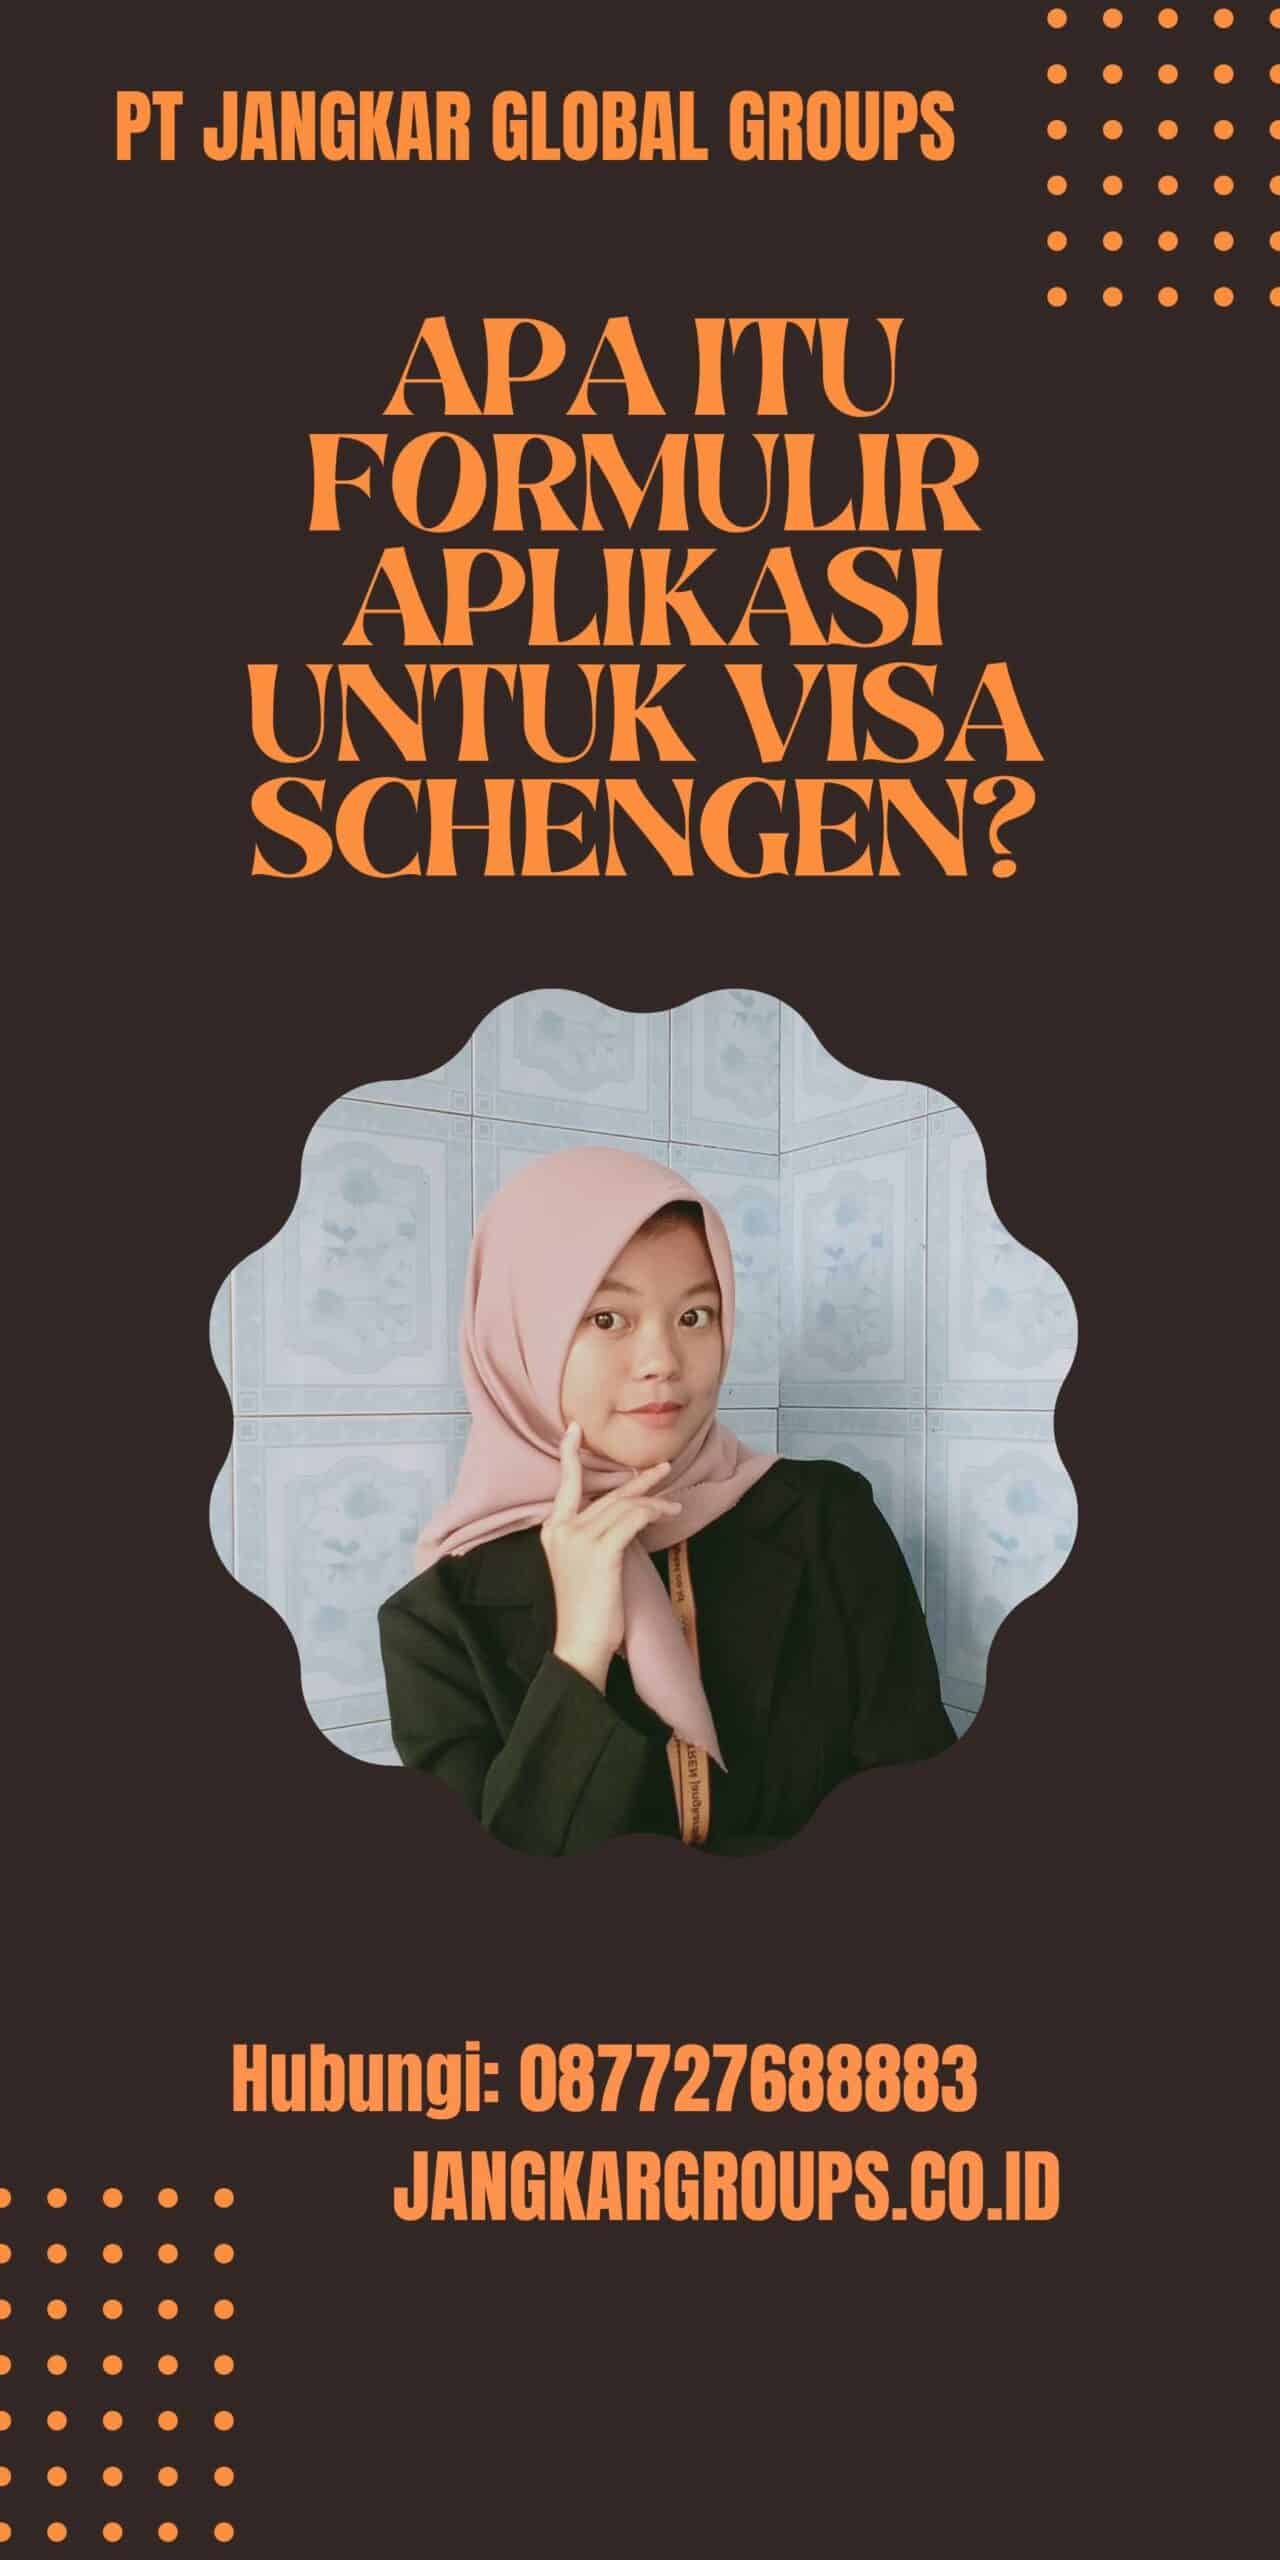 Apa itu Formulir Aplikasi untuk Visa Schengen